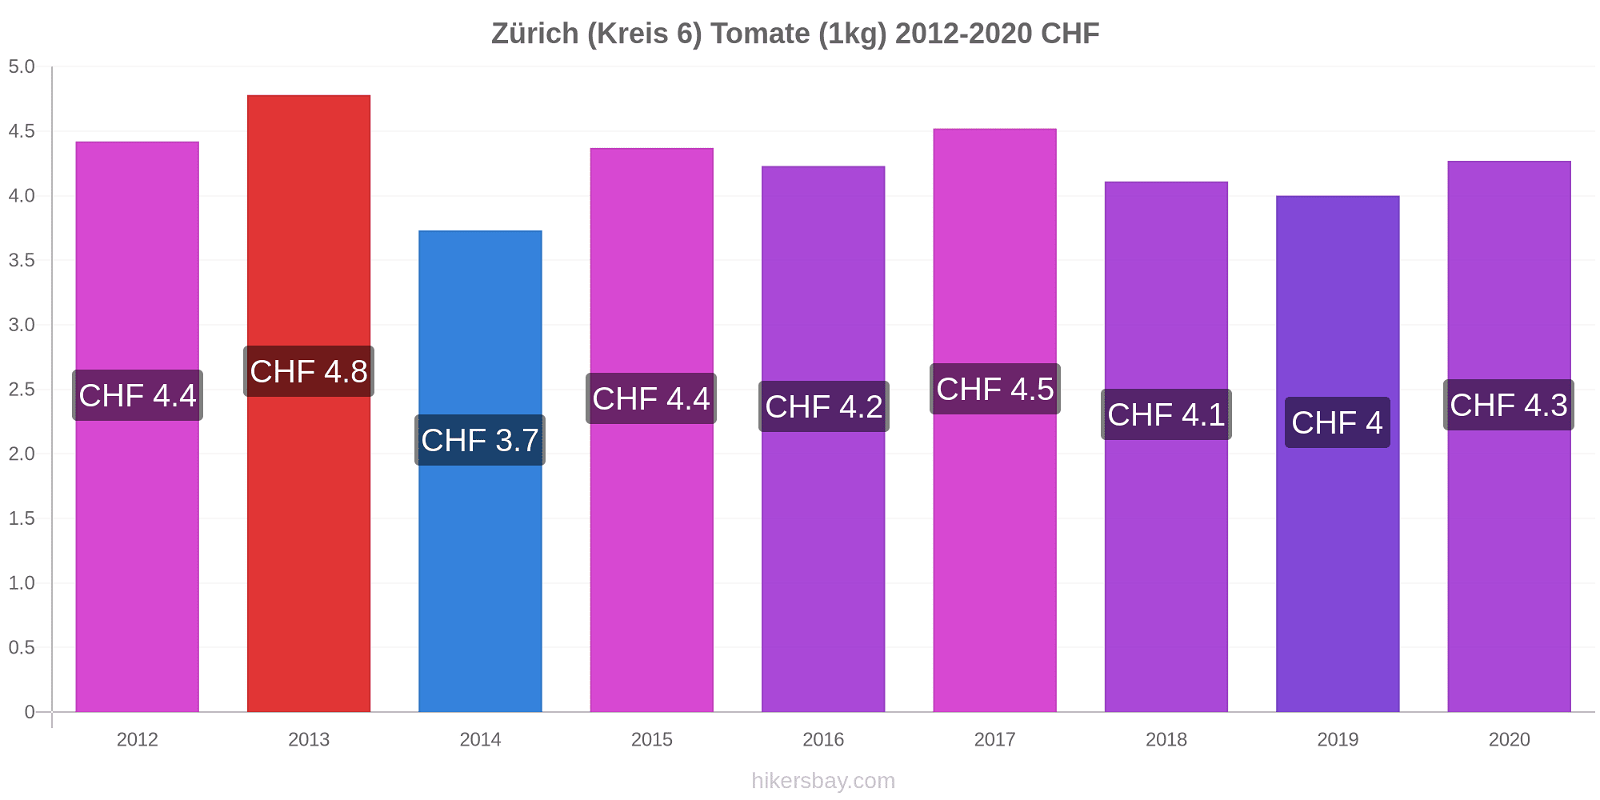 Zürich (Kreis 6) cambios de precios Tomate (1kg) hikersbay.com